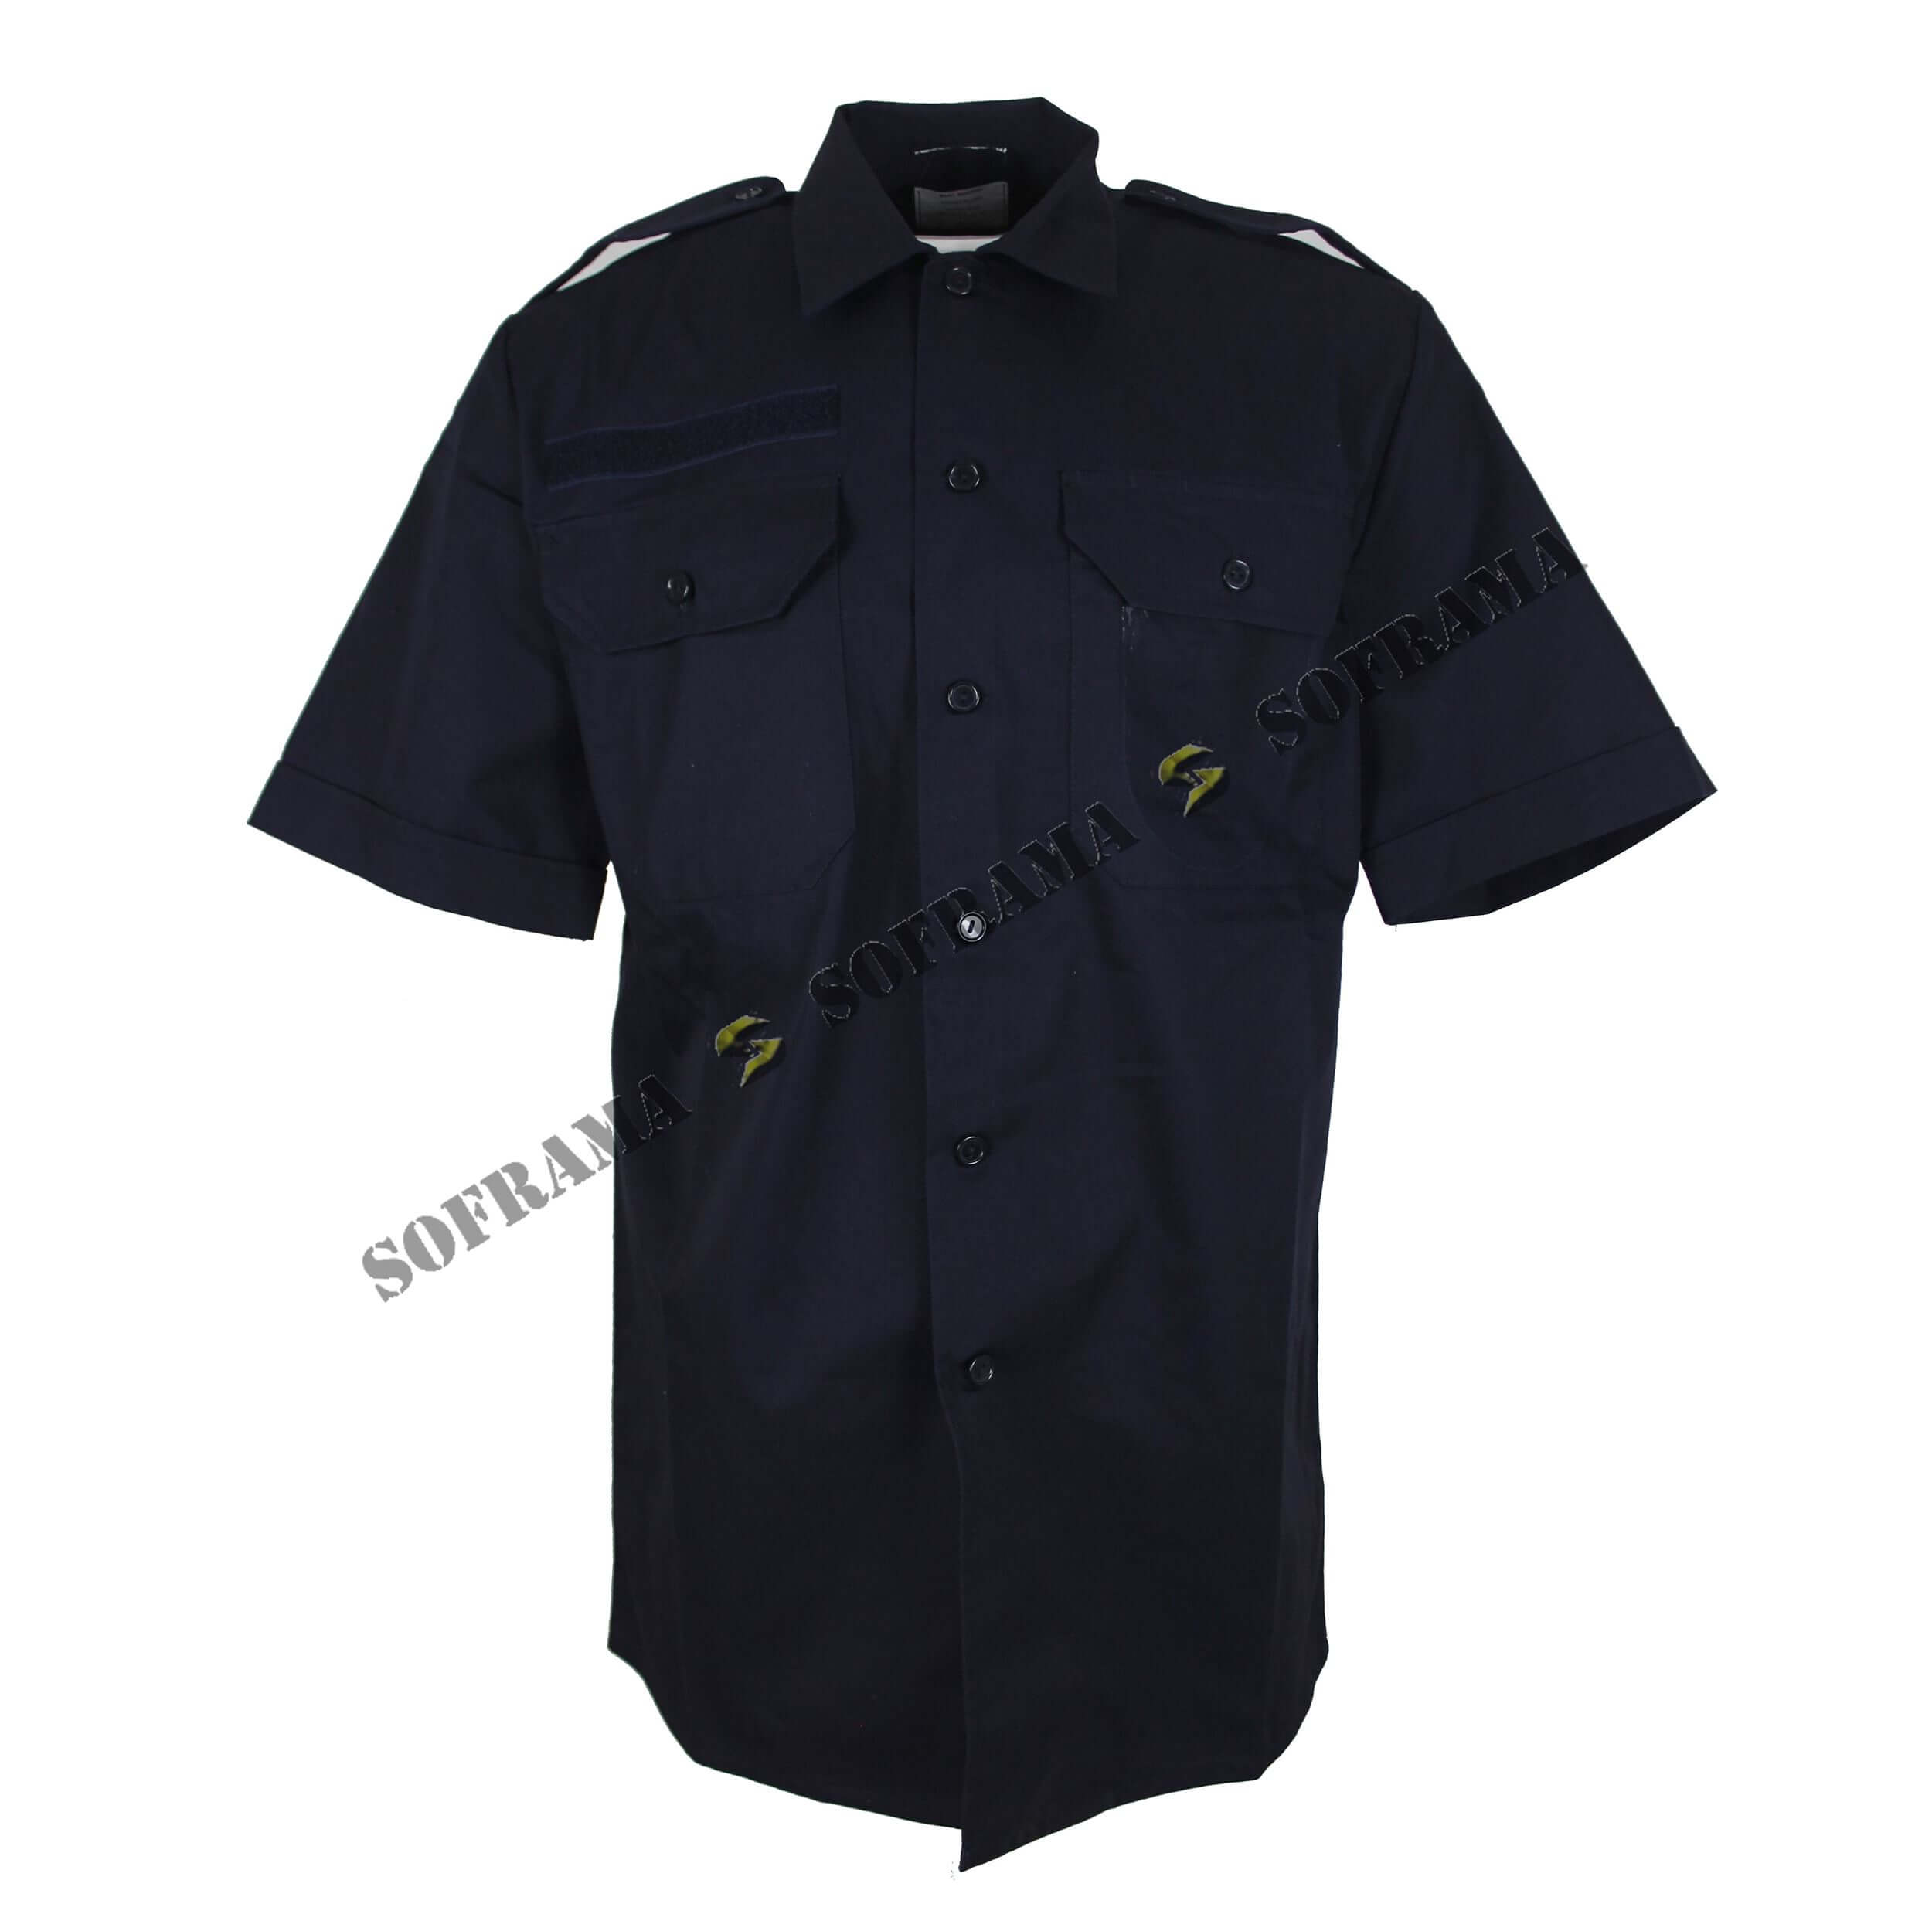 Dutch army dark blue working shirt - Soframa